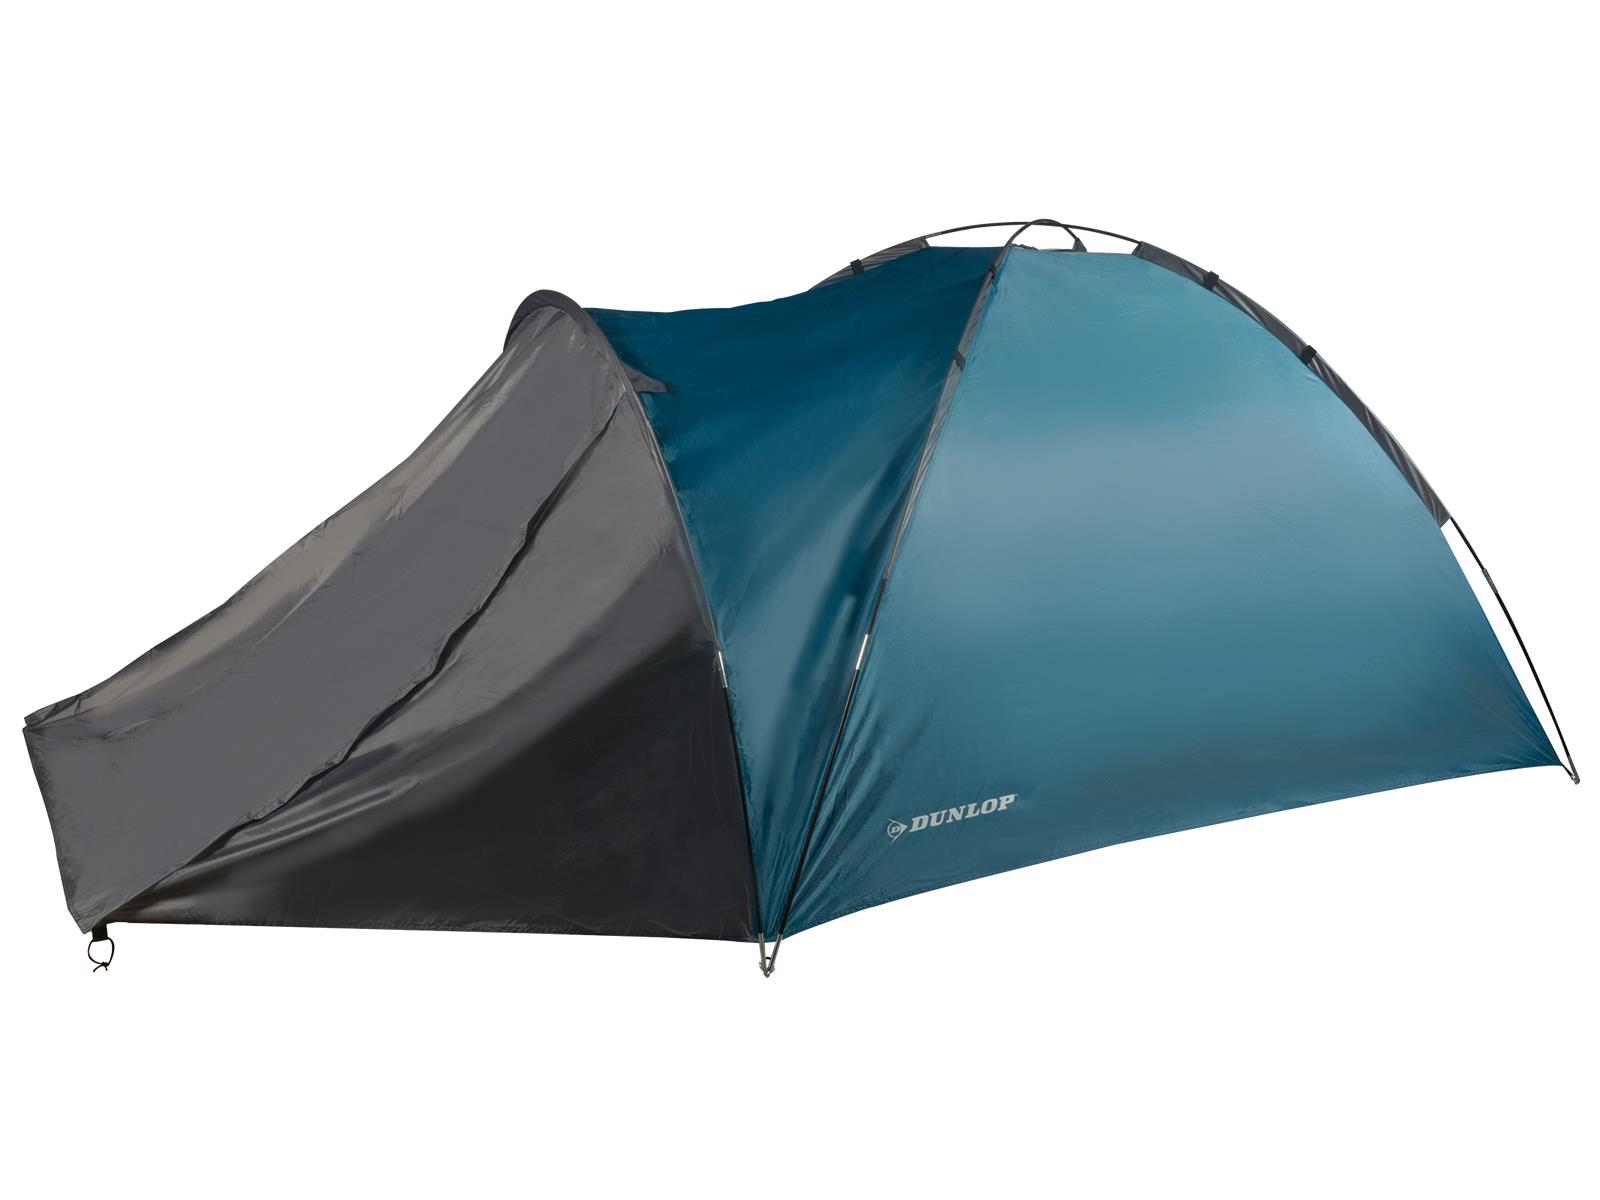 Camping Zelt Dunlop, 4 Personen, 210x250x130cm, 3,5kg